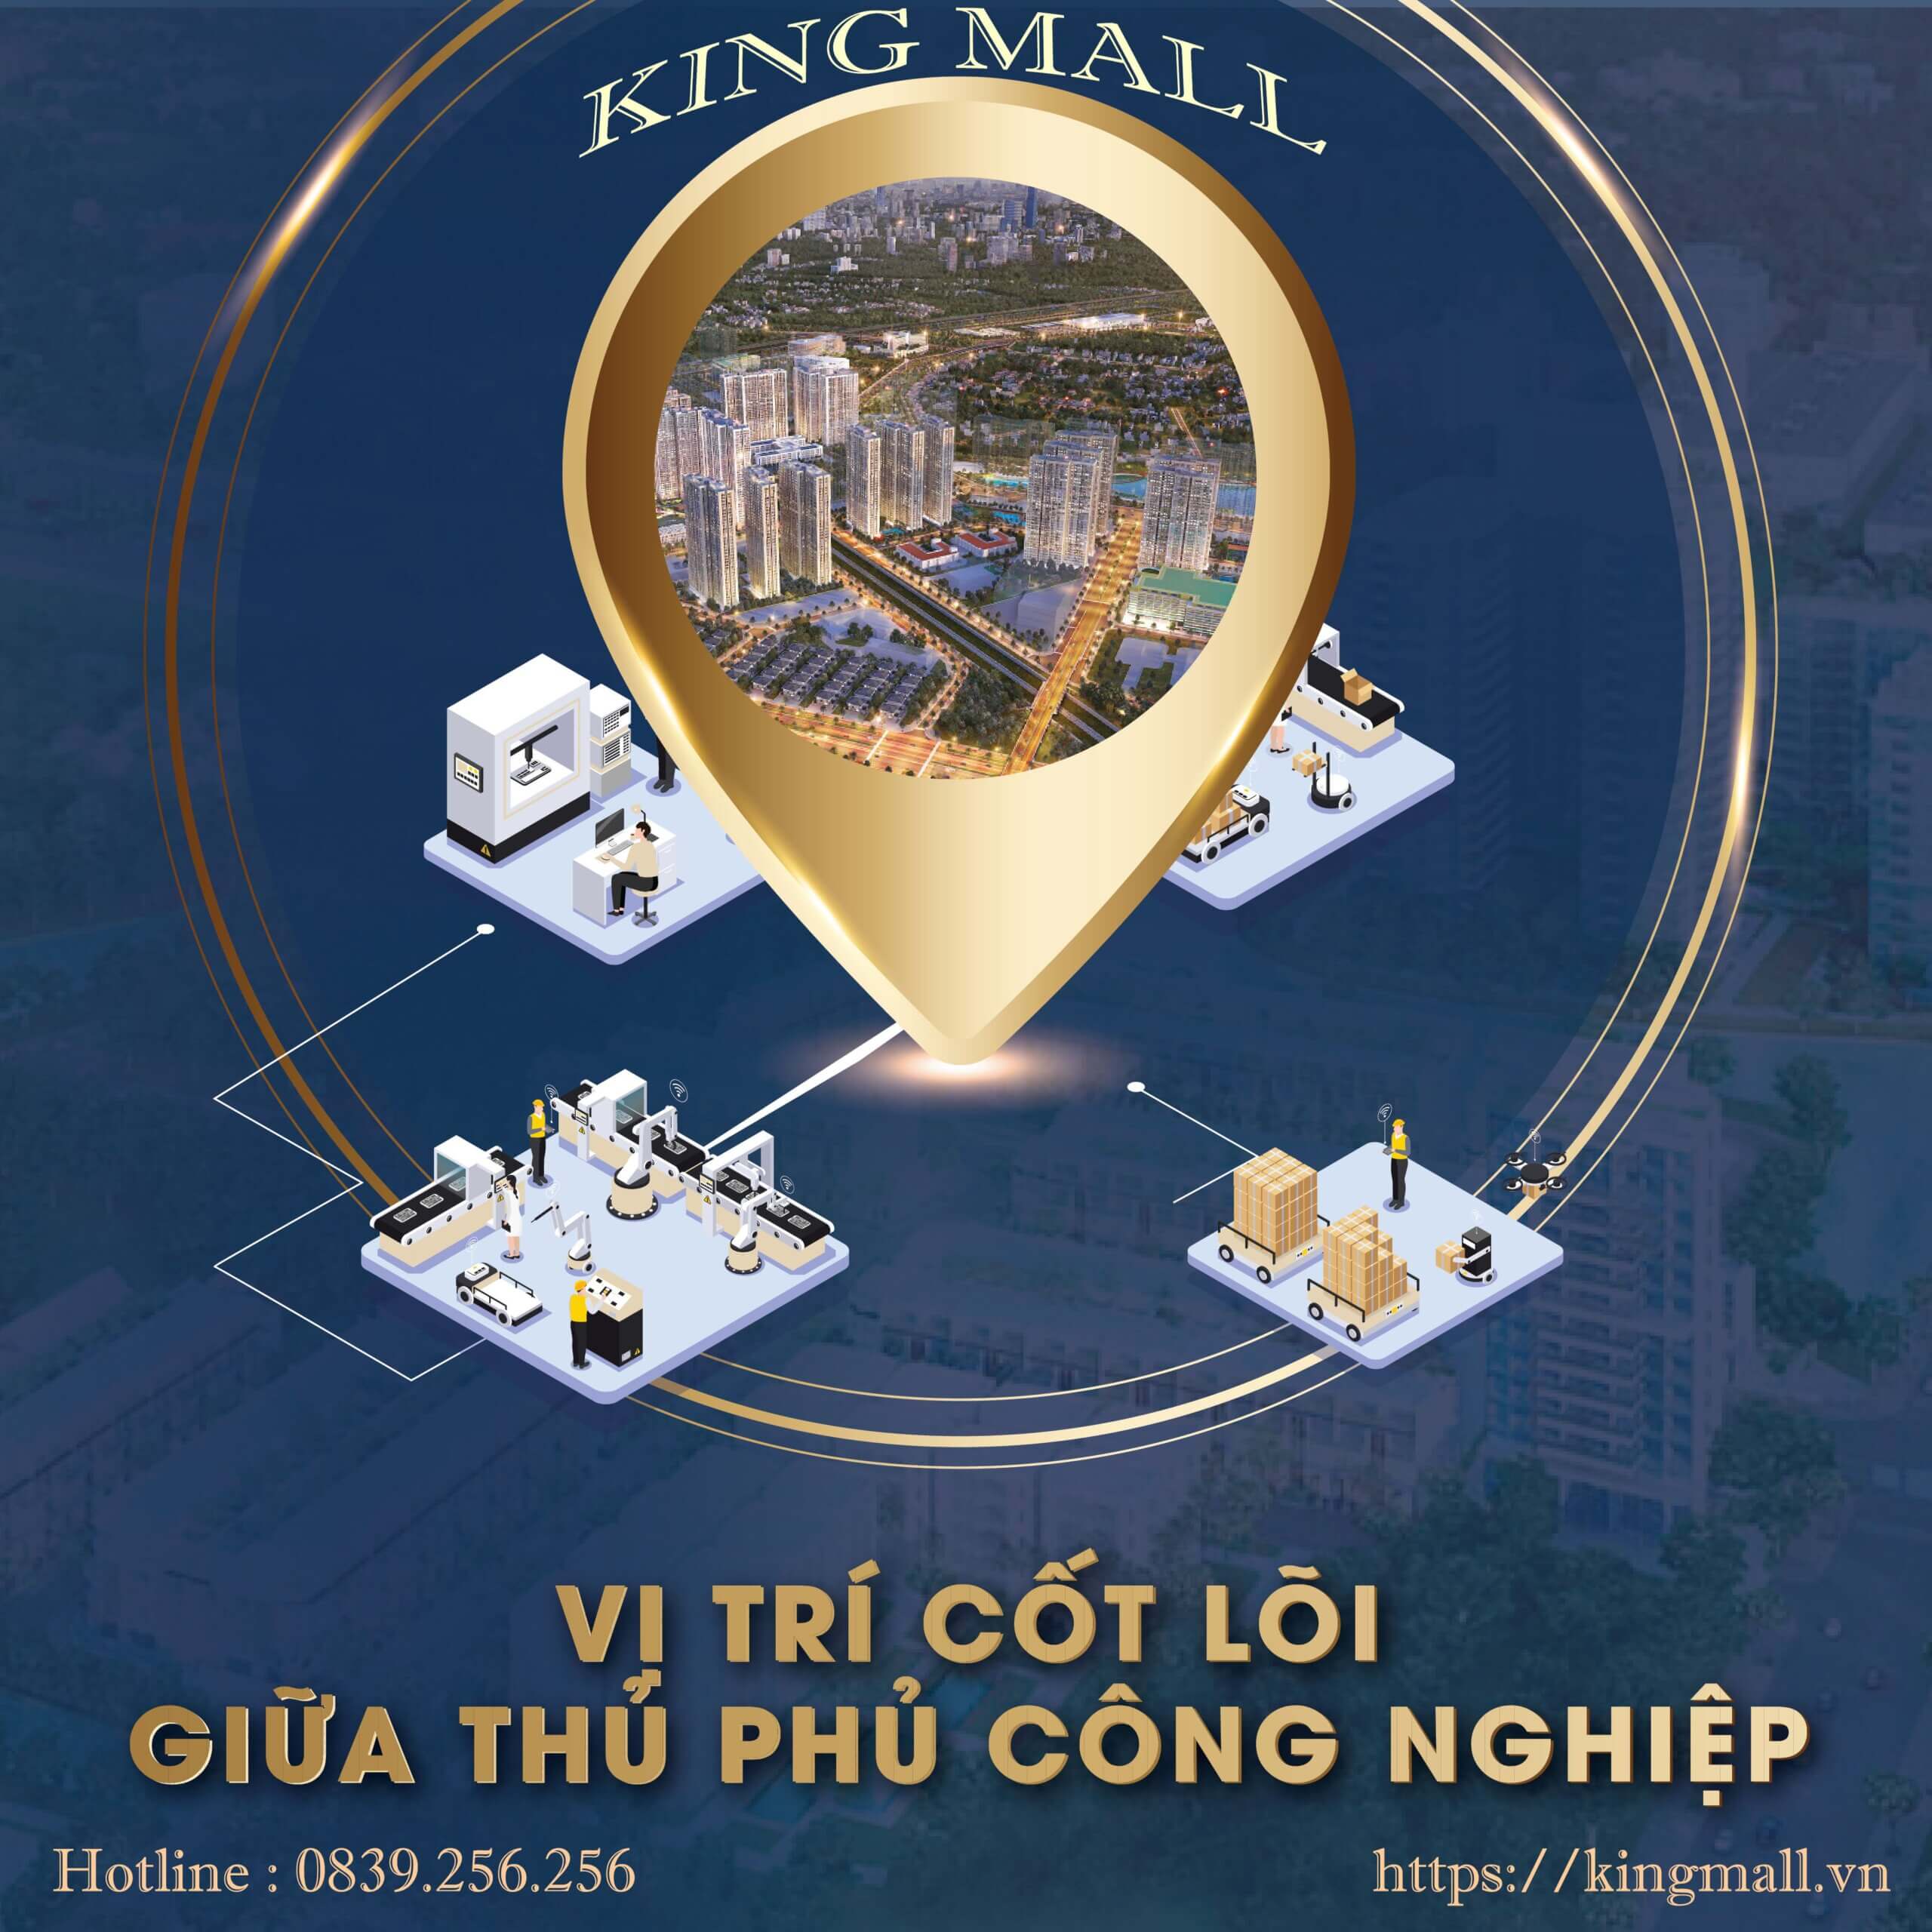 Dự án King Mall nằm giữa thủ phủ khu công nghiệp 